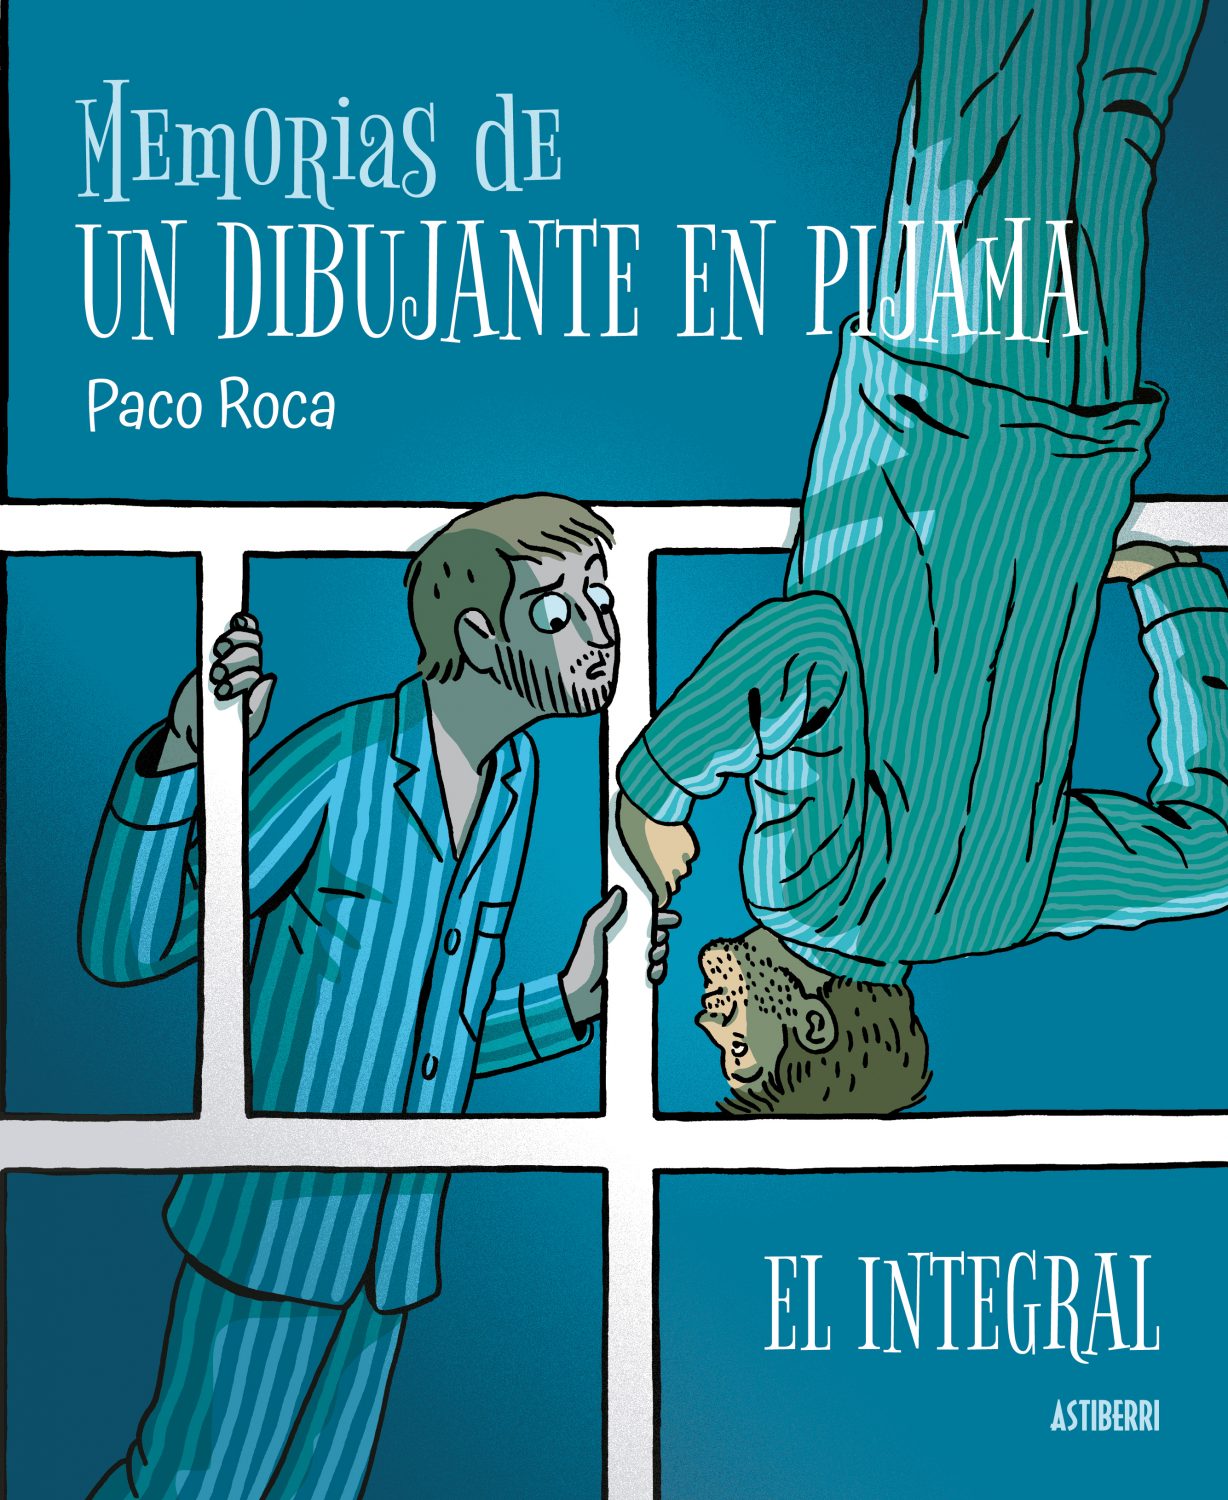 Paco Roca culmina el volumen definitivo sobre sus memorias pijameras